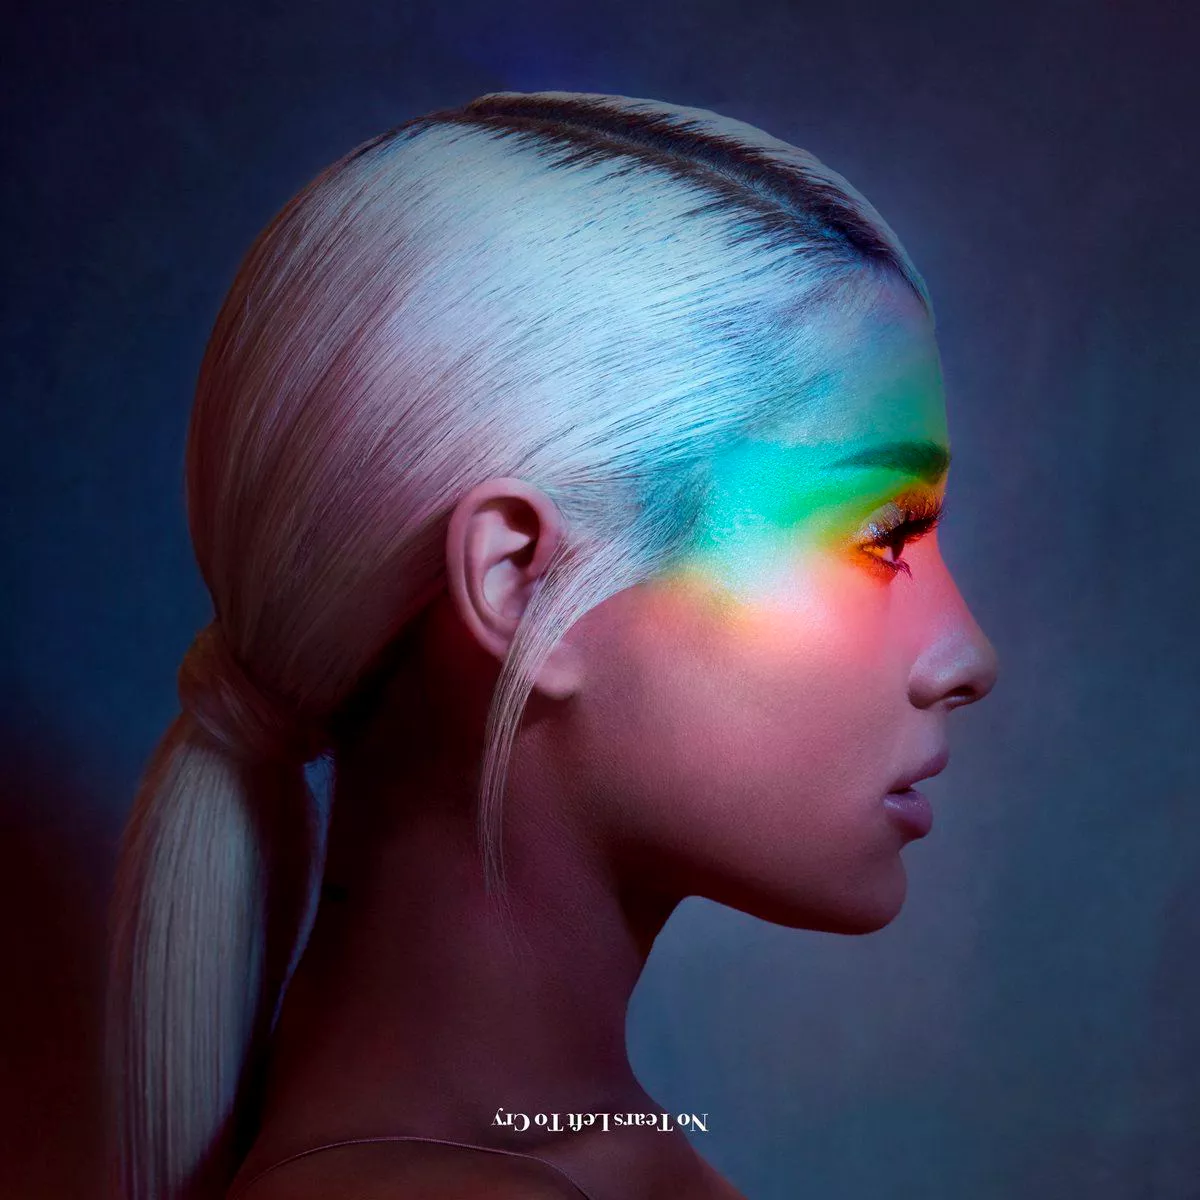 Følelsesladd ny låt fra Ariana Grande – den første siden Manchester-terroren